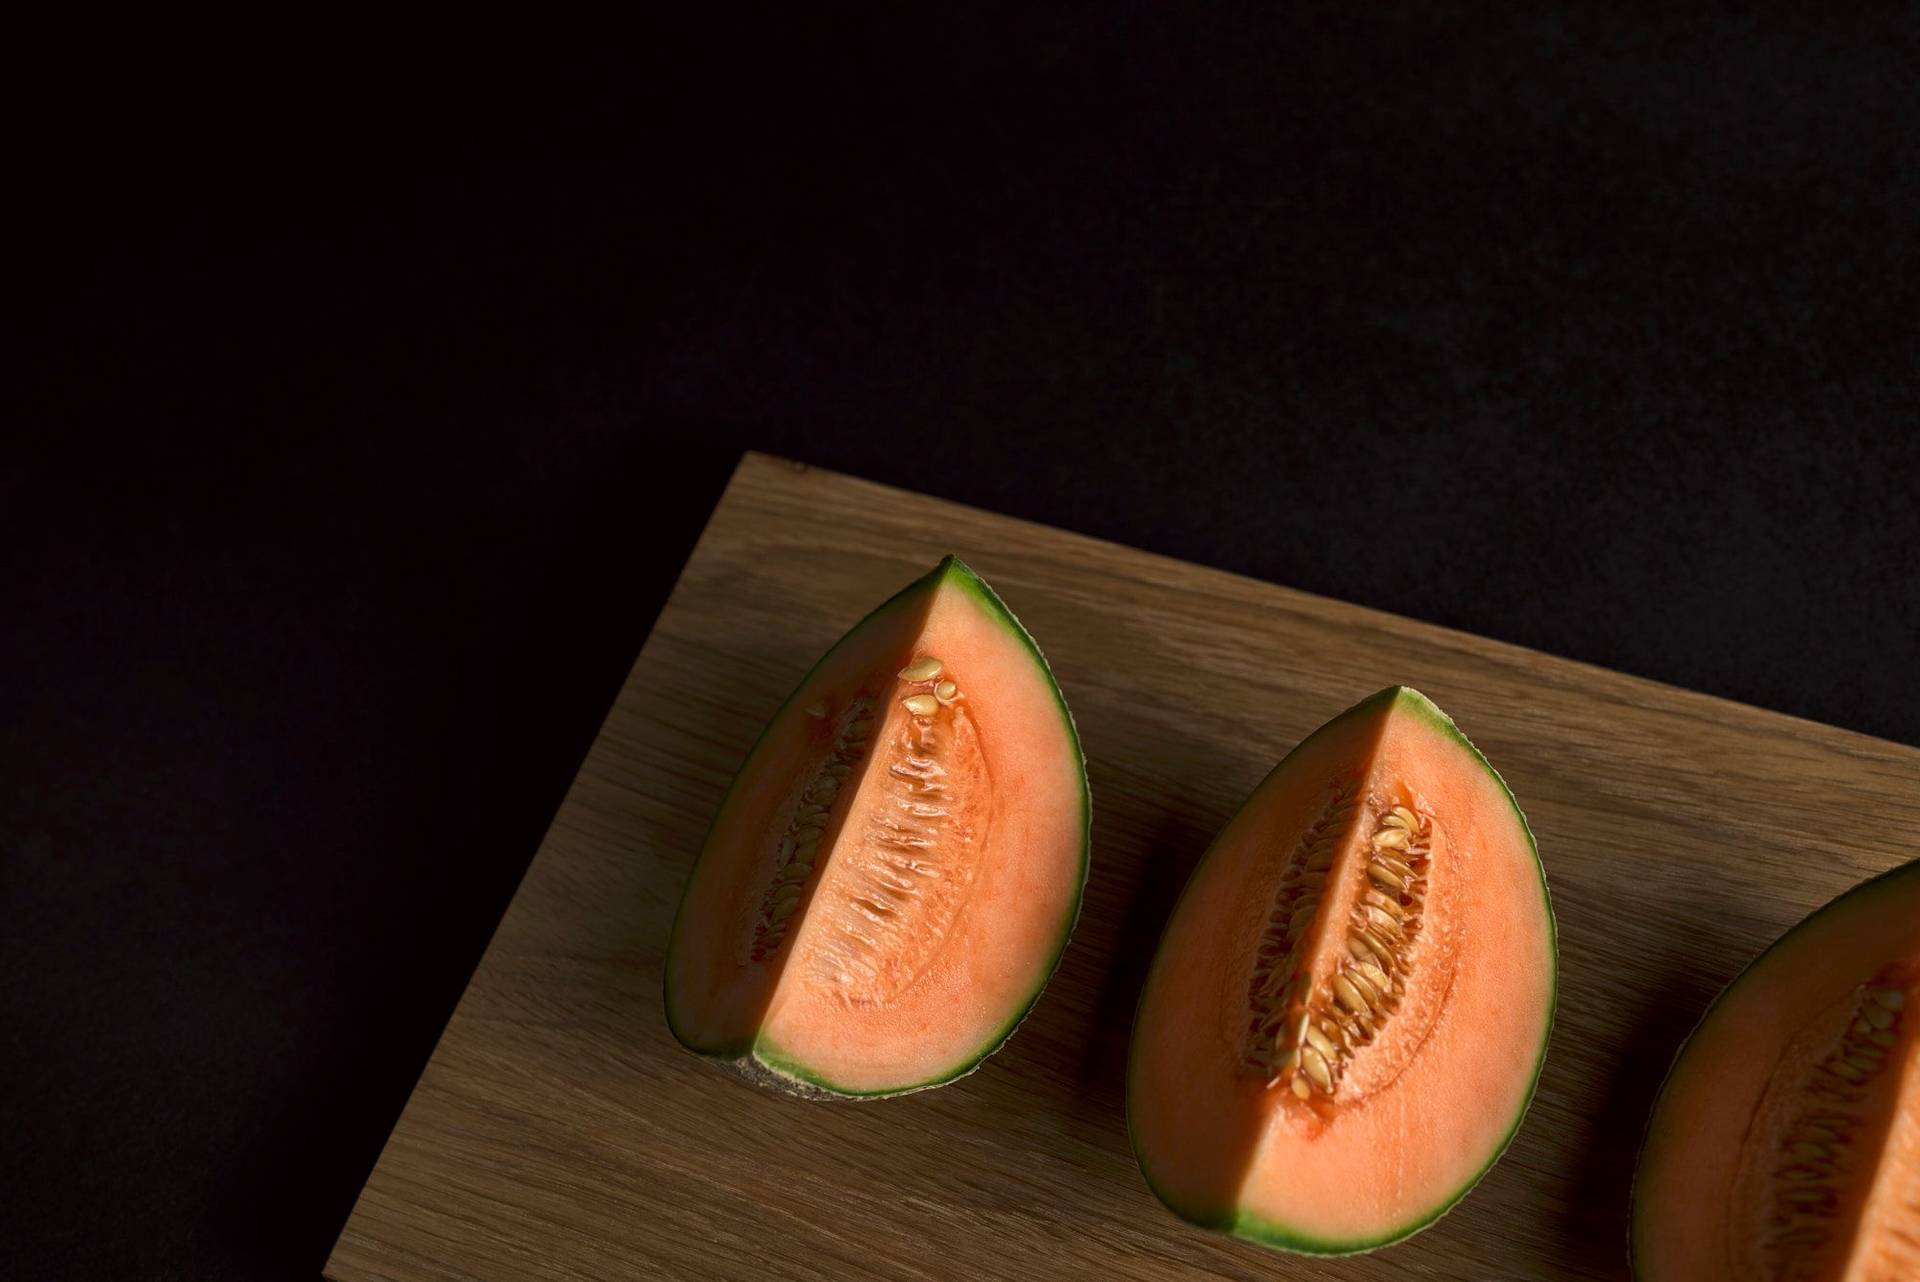 drei spalten cantaloupe melone auf einem holzbrett mit schwarzem hintergrund